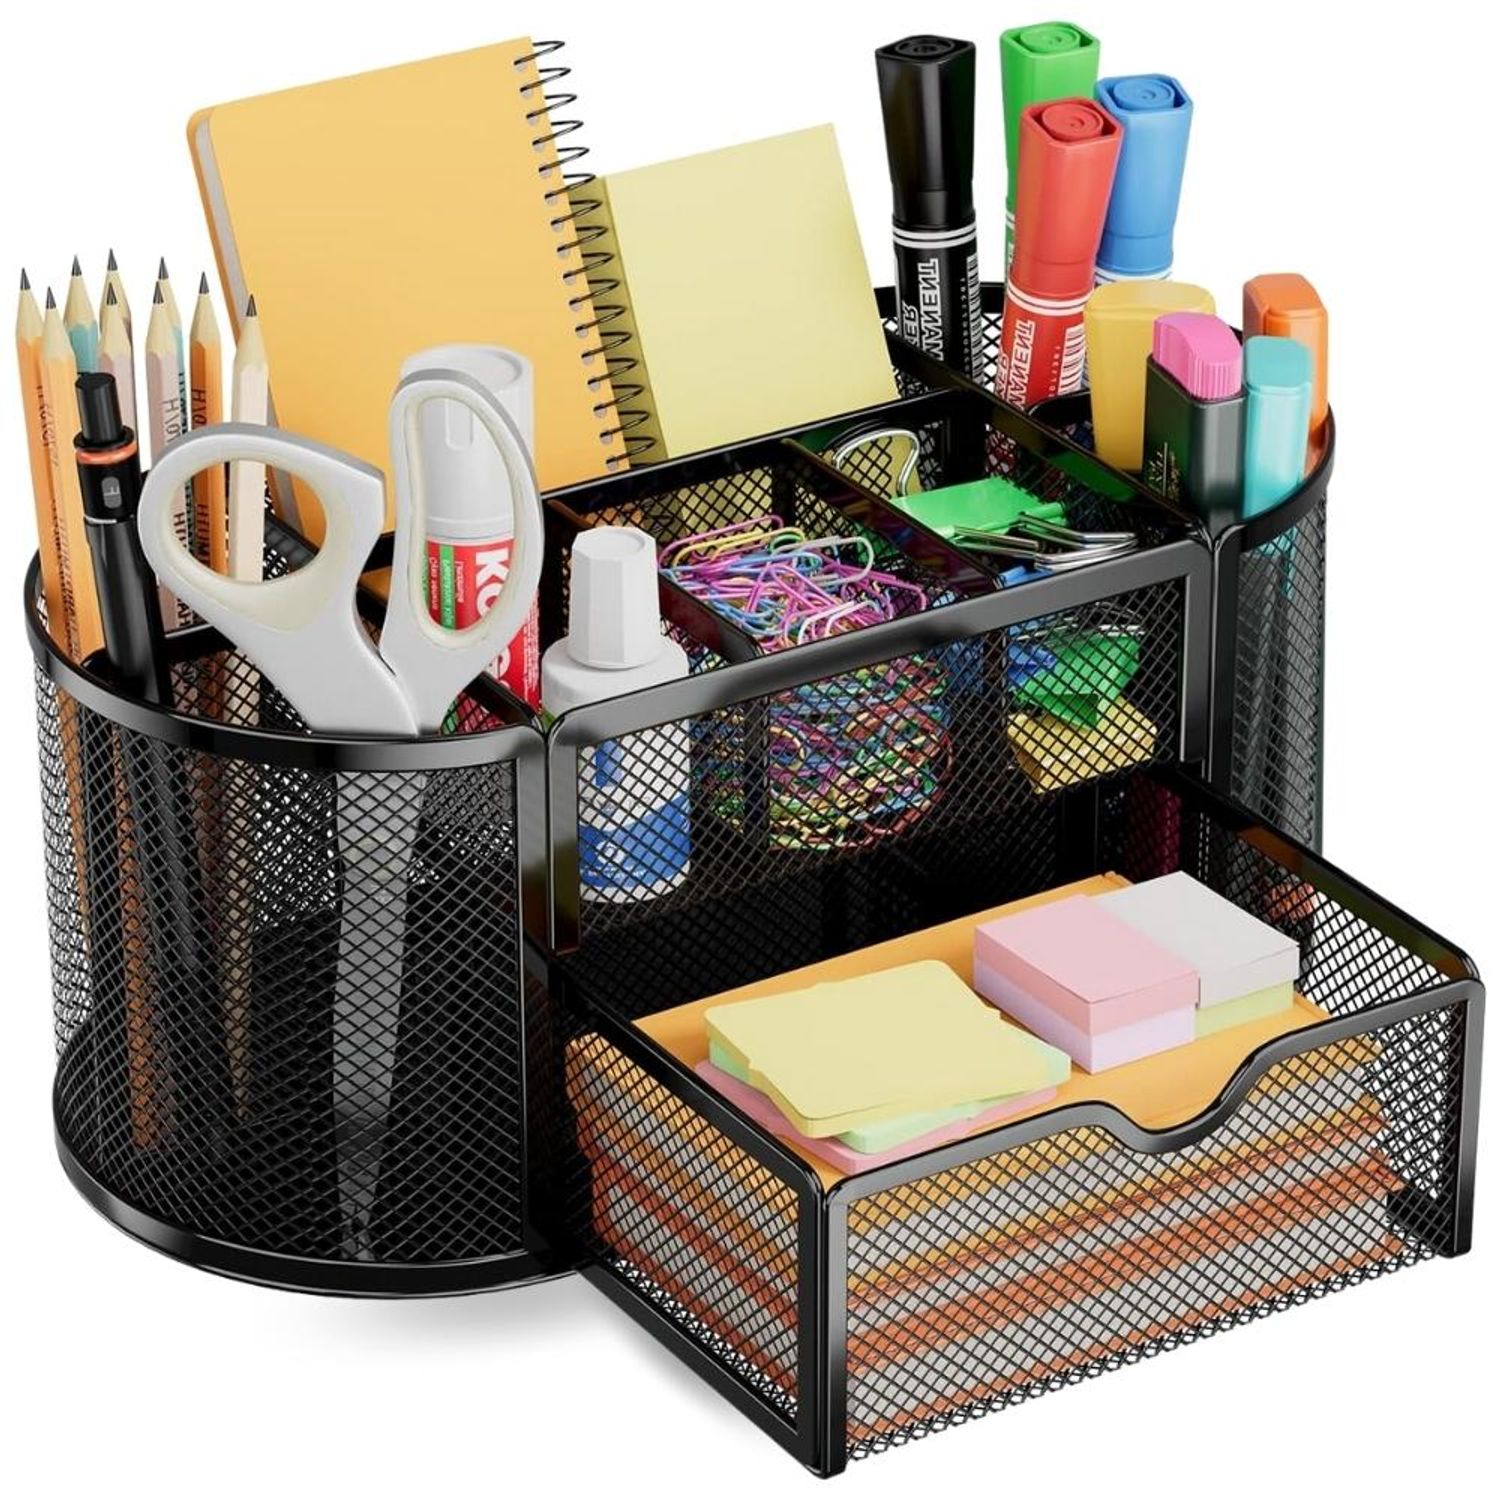  vedett Organizador de escritorio de oficina con 6  compartimentos + soporte para bolígrafos/72 accesorios, organizadores de  accesorios de escritorio para oficina, hogar, escuela (negro) : Productos  de Oficina